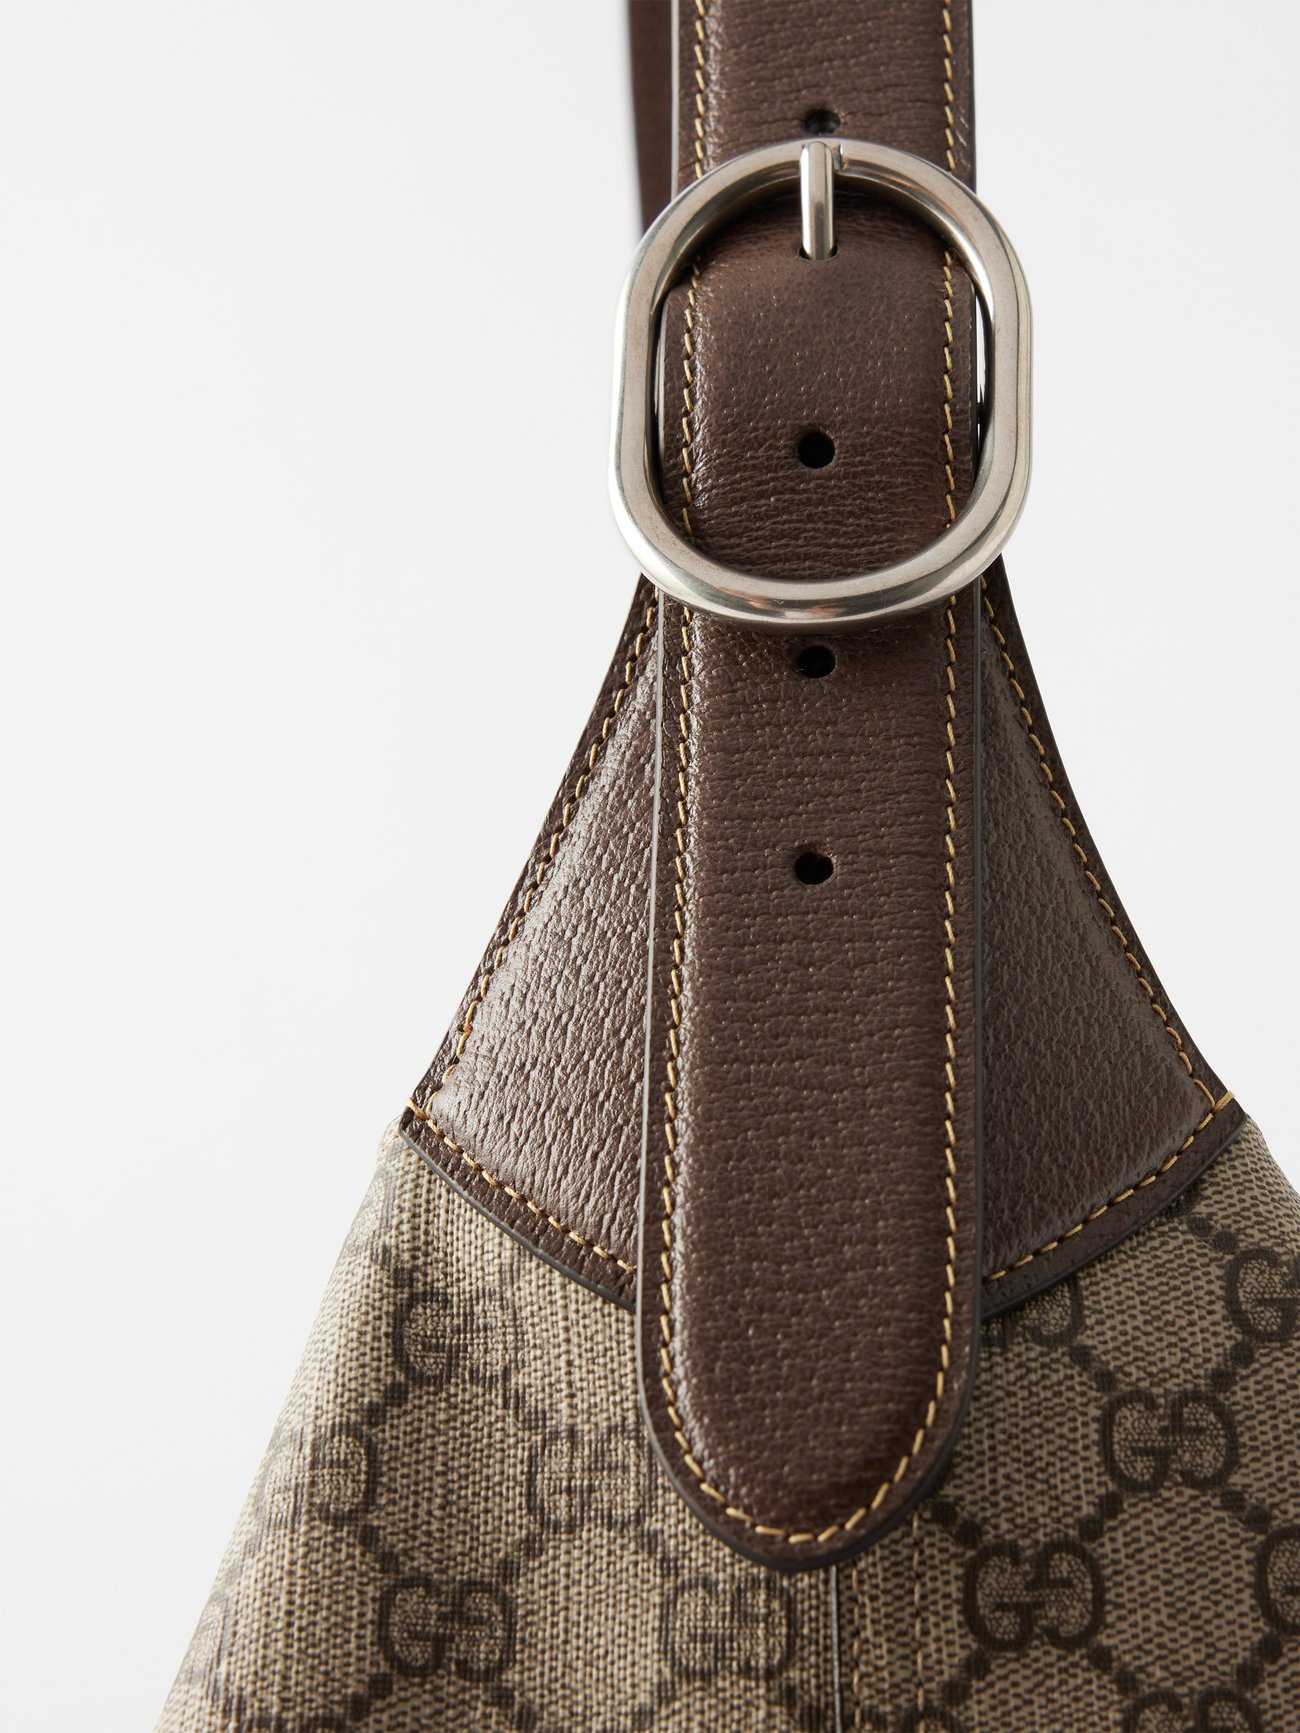 Gucci Gg Supreme Canvas And Leather Mini Cross-body Bag - Beige Multi